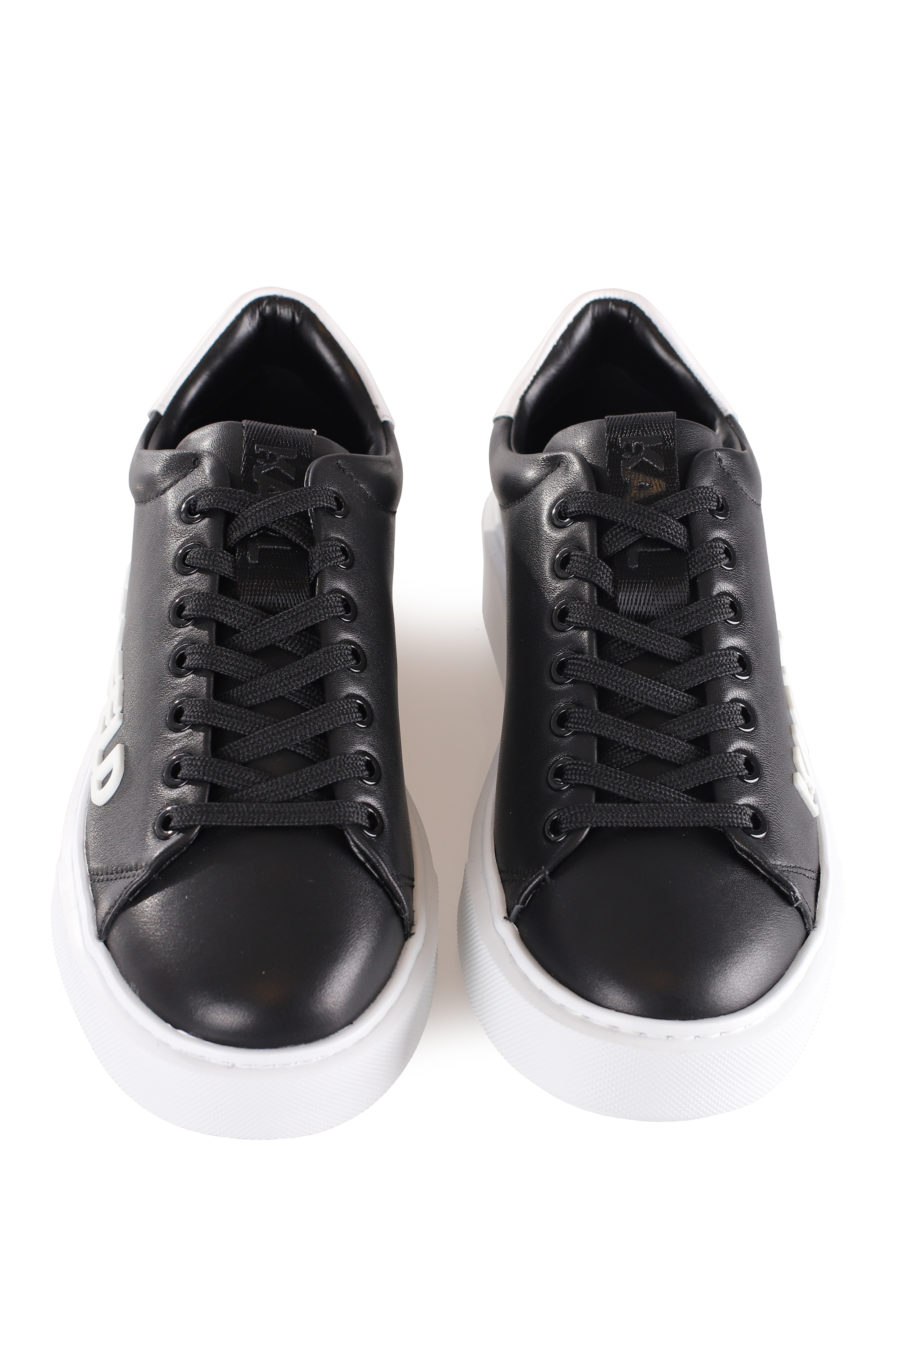 Zapatillas negras con maxi logo en goma - IMG 9609